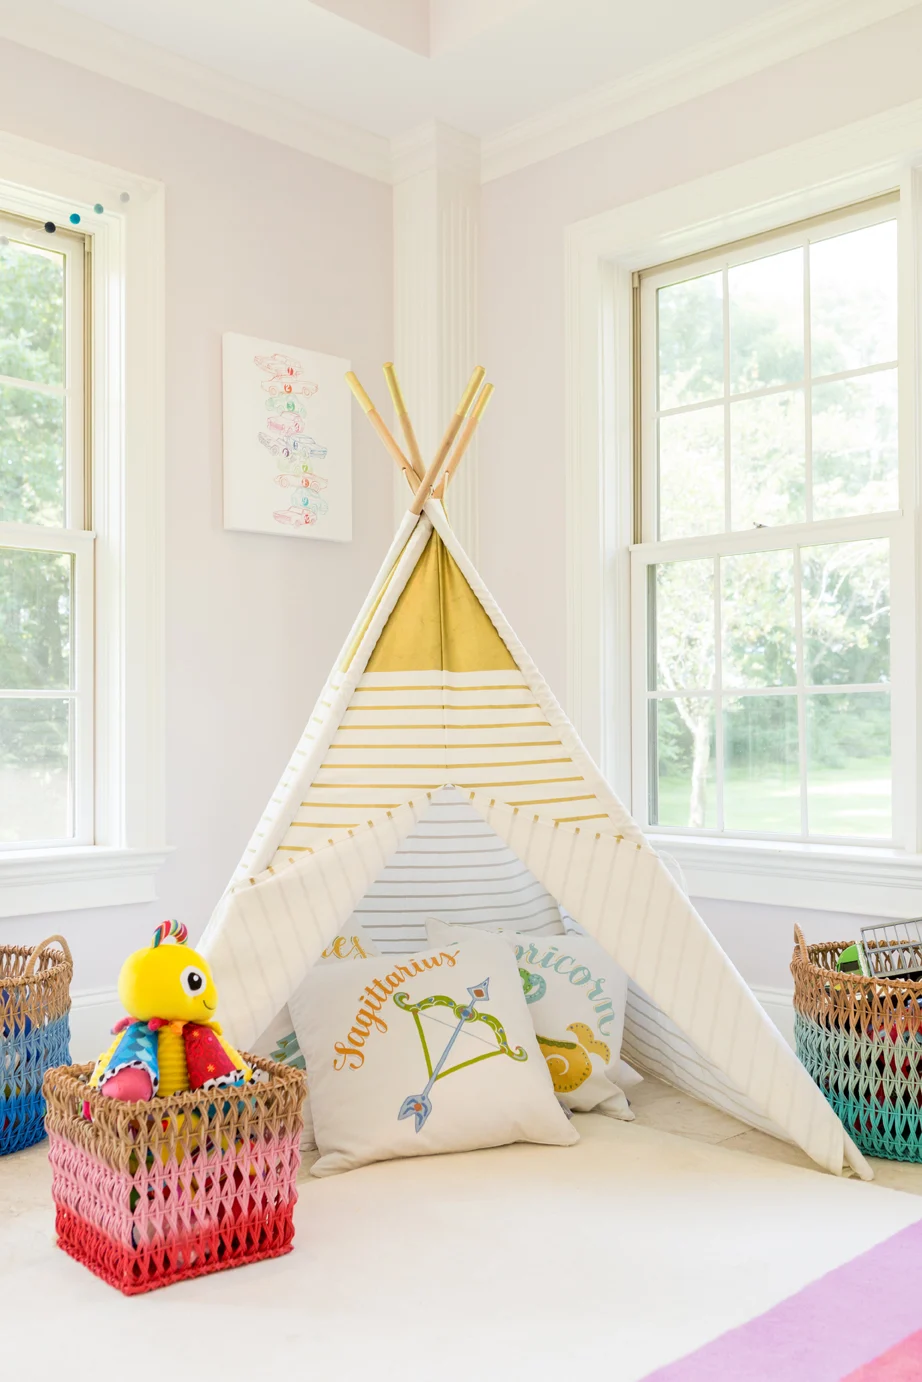 Kids' Playroom with Teepee - Project Nursery